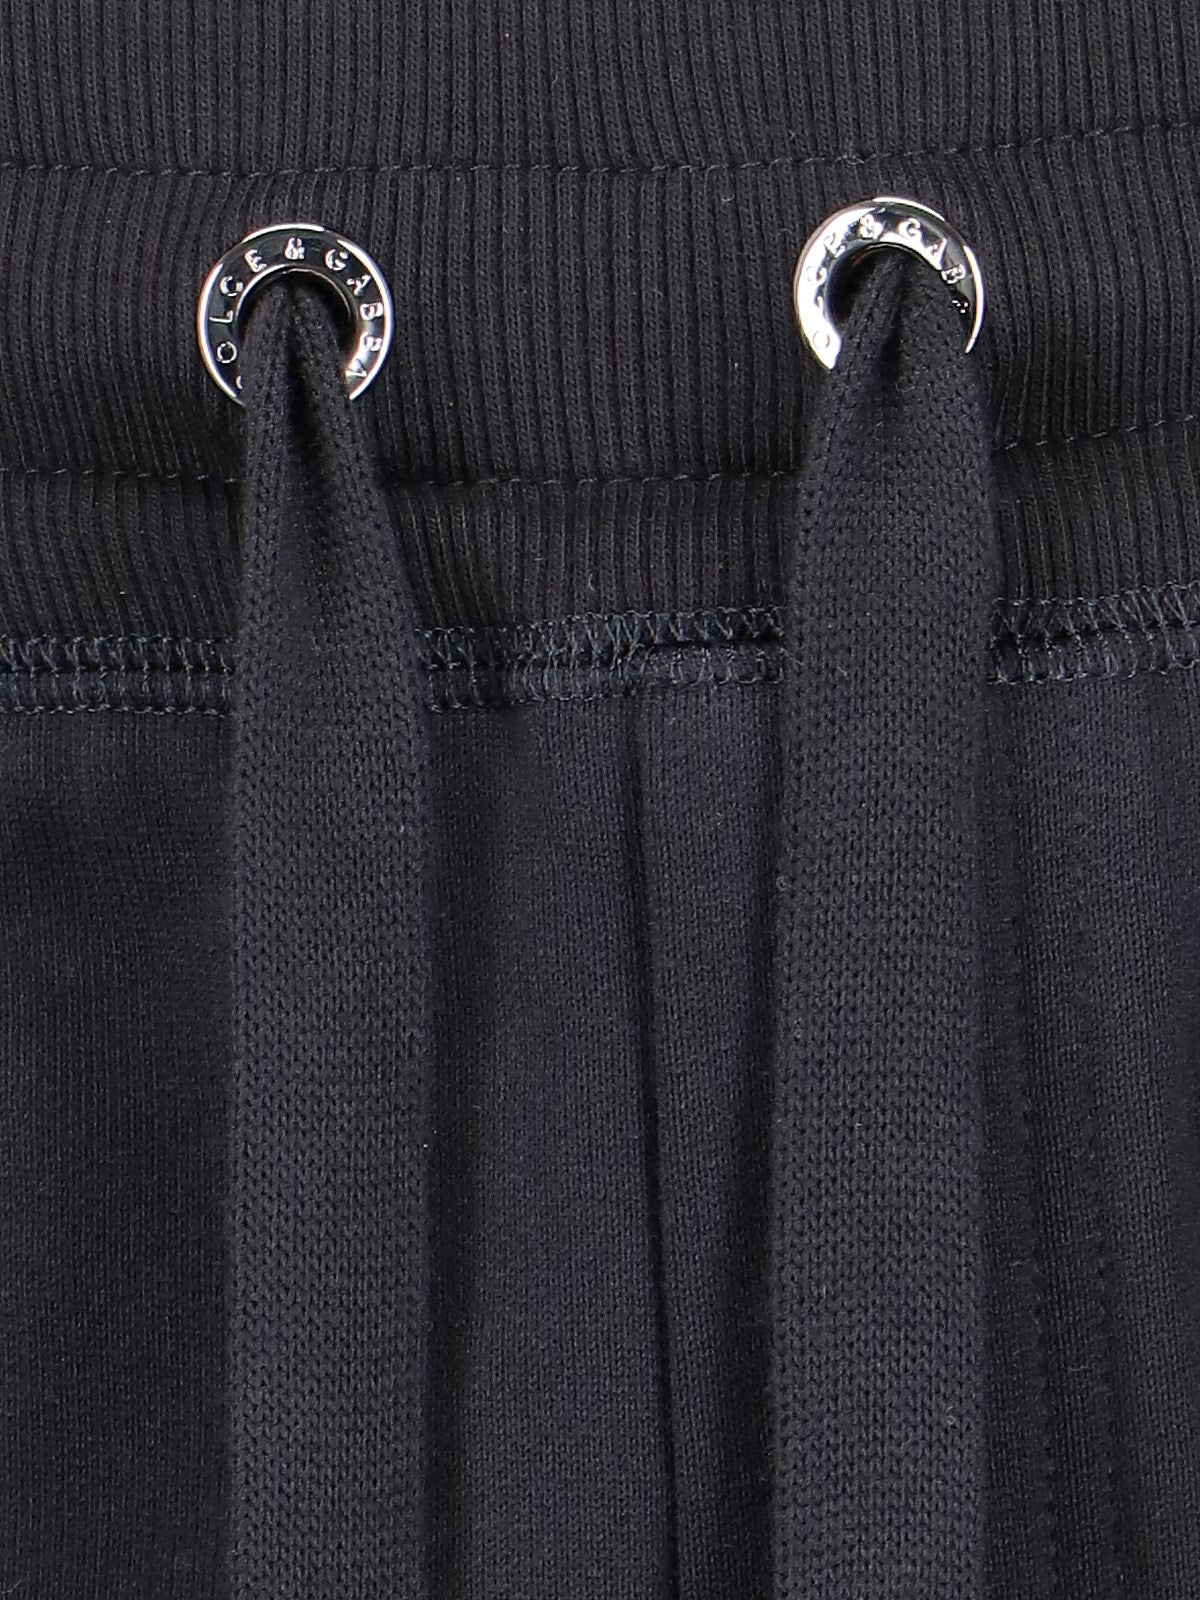 Dolce & Gabbana Pantaloni sportivi logo-Pantaloni sportivi-Dolce & Gabbana-Pantaloni sportivi logo Dolce & Gabbana, in cotone nero, vita elastica, coulisse, due tasche zip laterali, una tasca zip retro, placca logo metallico argentato retro, polsini elastici.-Dresso